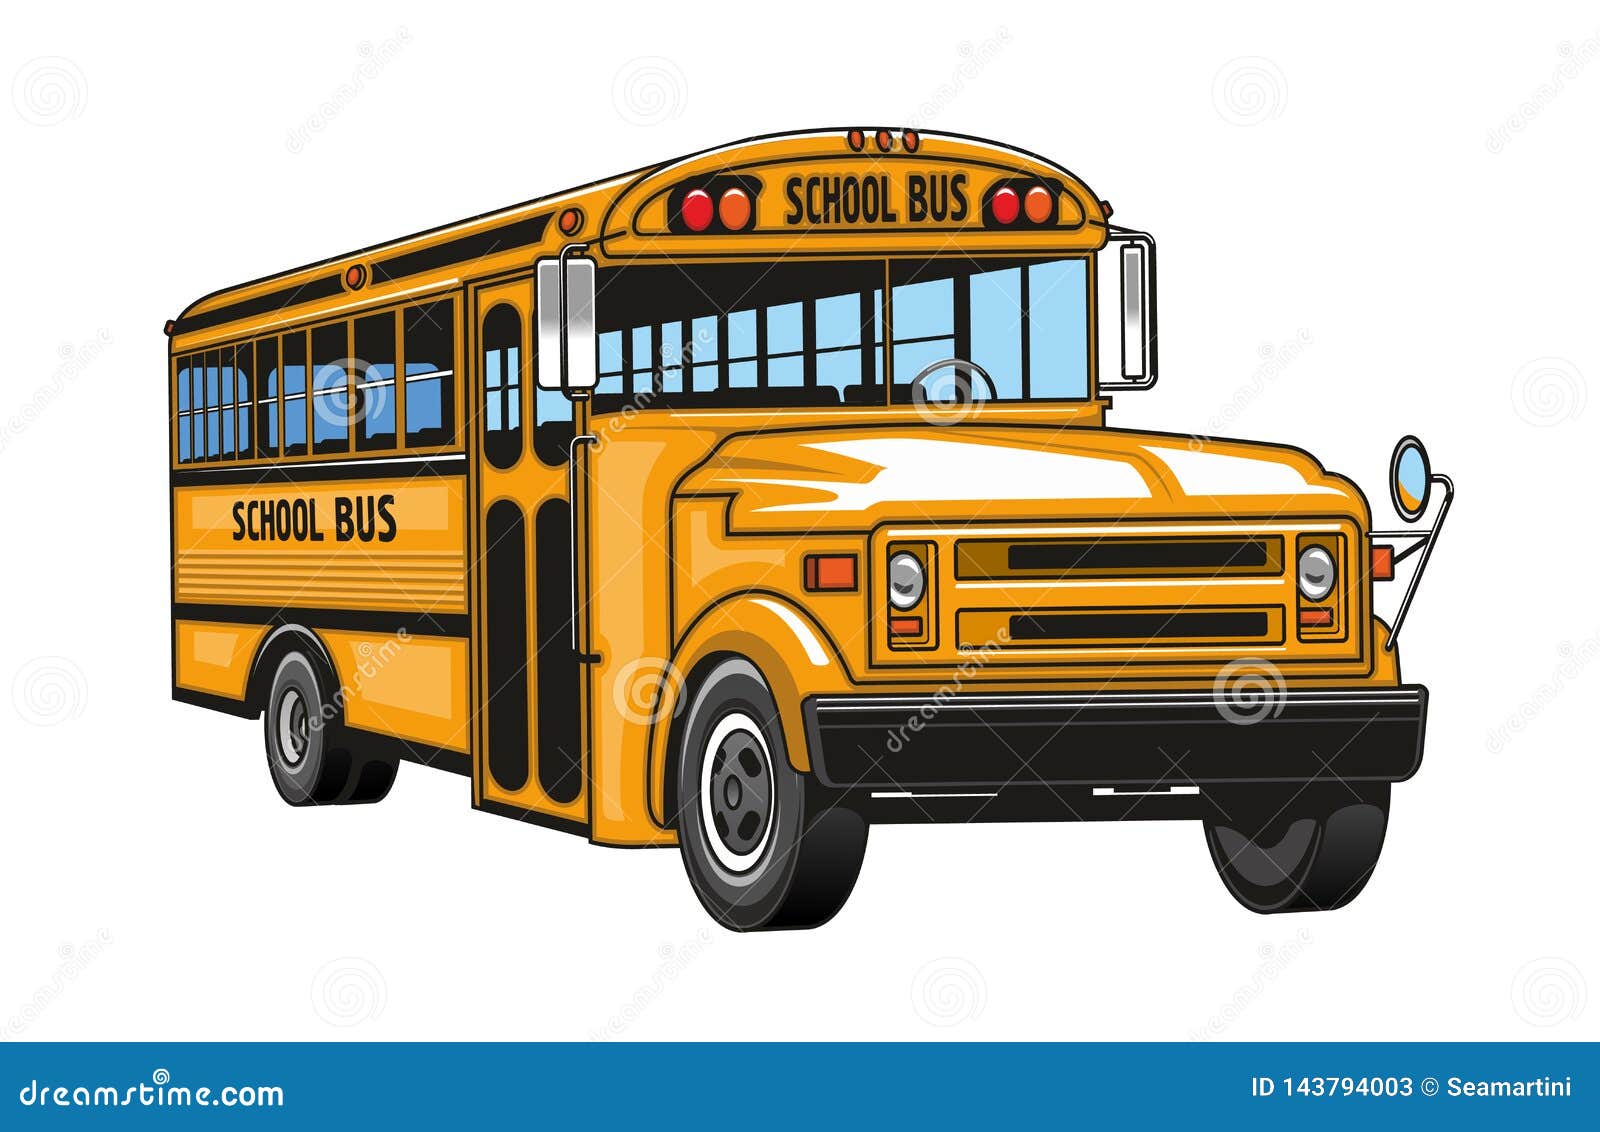 School Bus Yellow Cartoon Vehicle Stock Vector - Illustration of mirror,  vehicle: 143794003